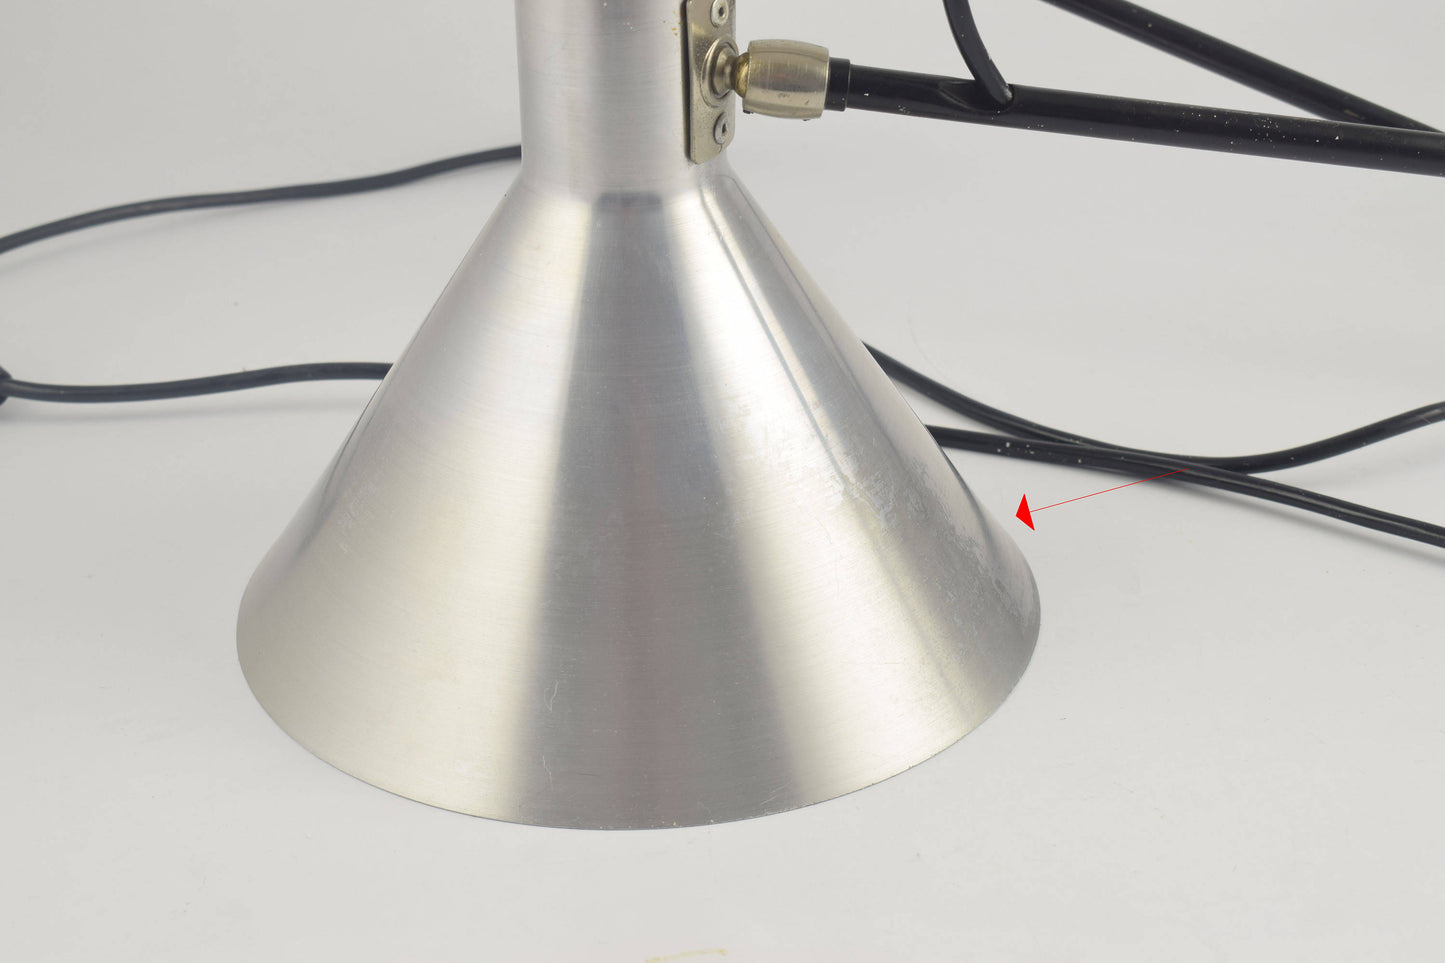 Anvia hoogervorst chroom aluminium elleboogwandlamp, Anvia 748-08 Verstelbare zilverkleurige armlamp